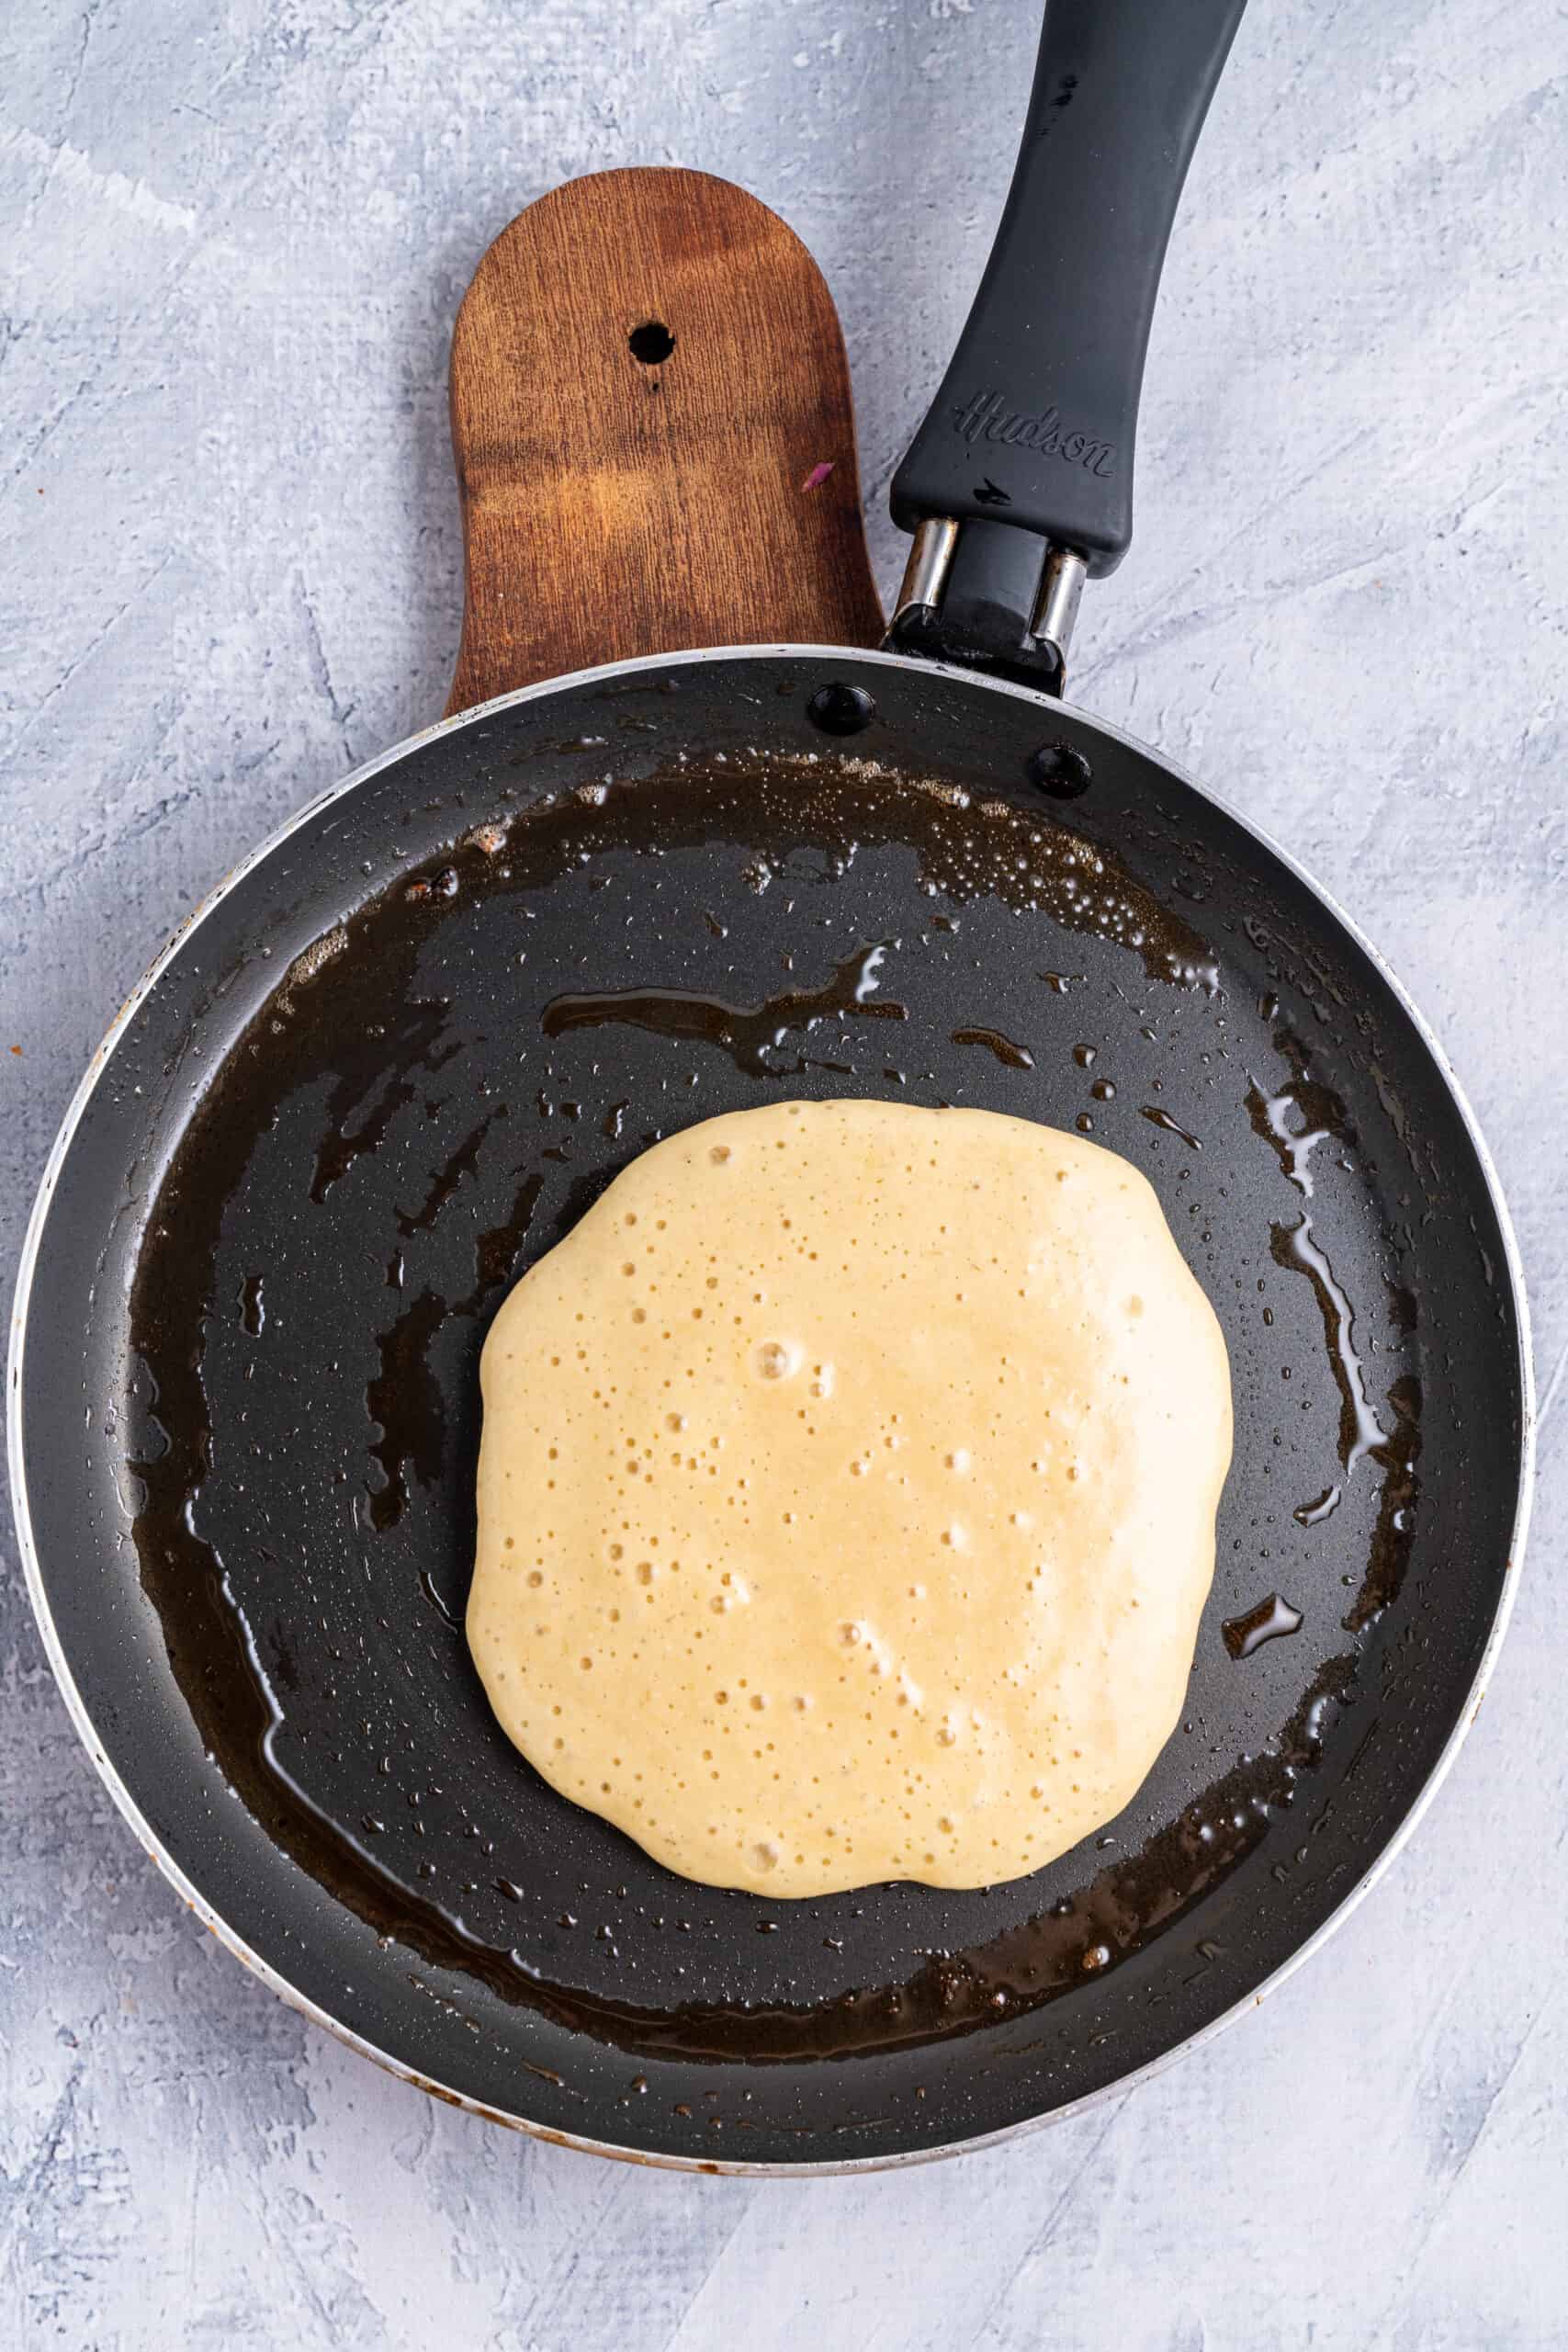 Making Protein Pancakes
